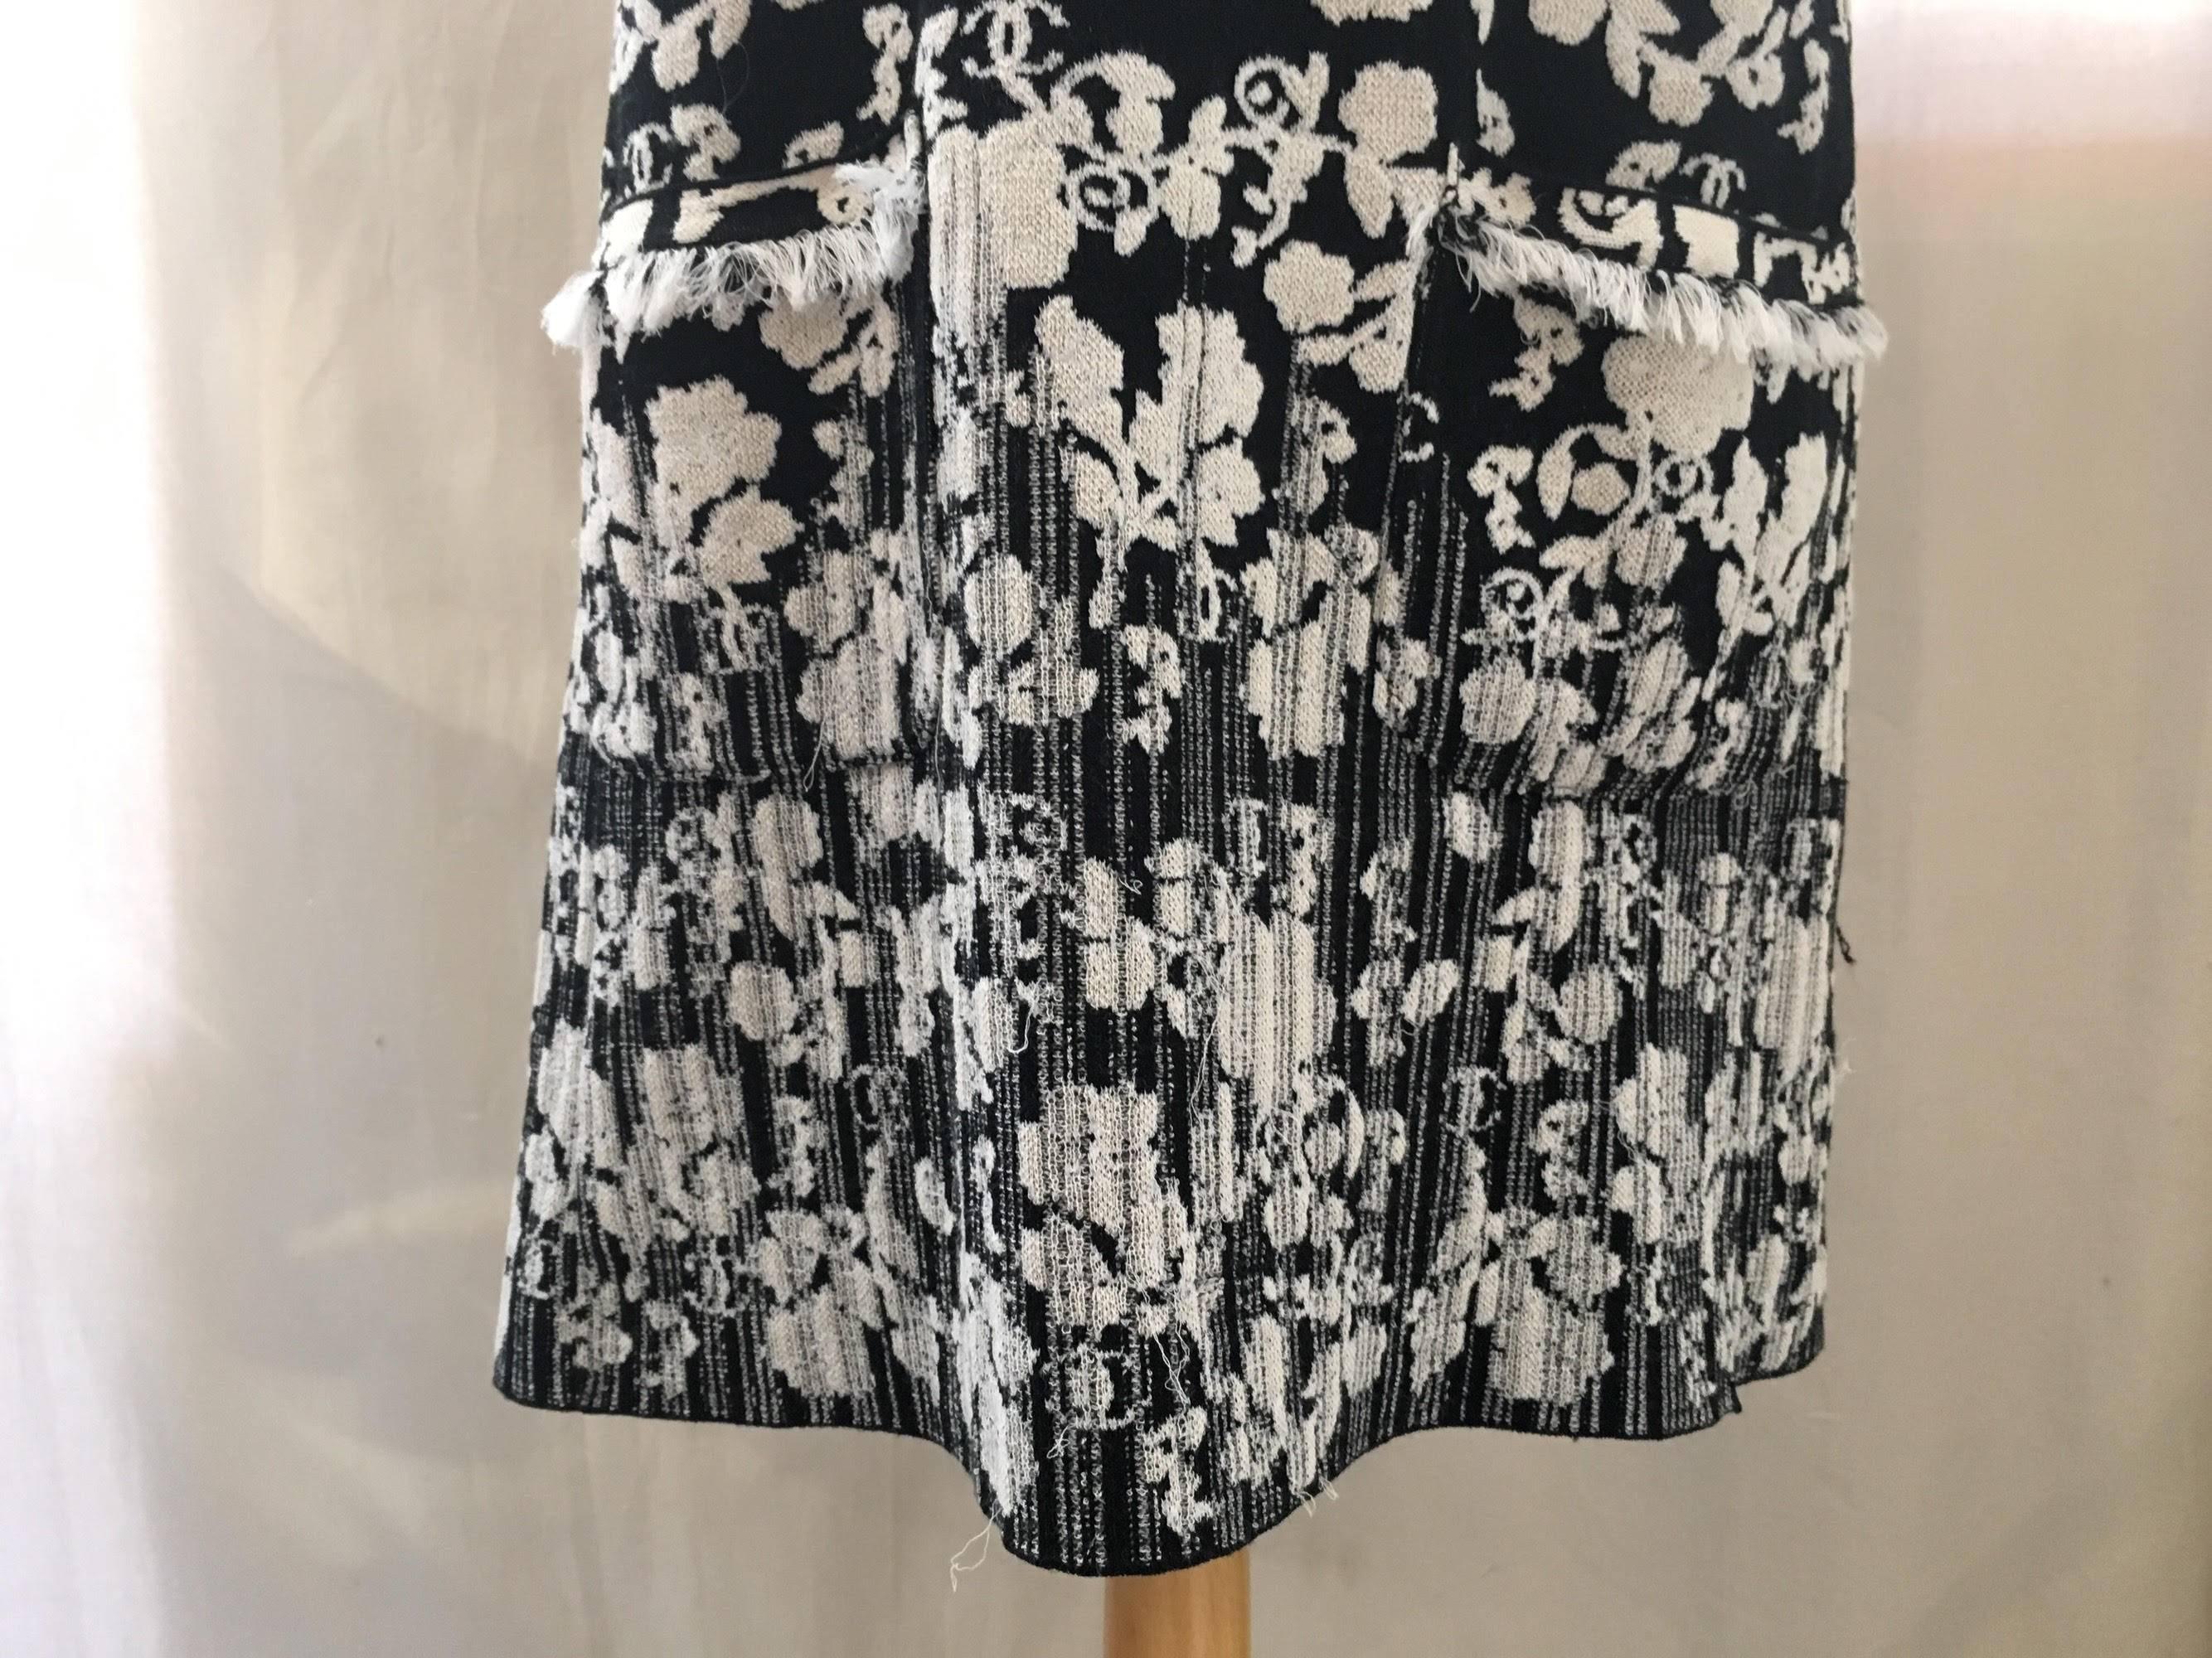 CHANEL Black/White Printed CC Dress size 38 2